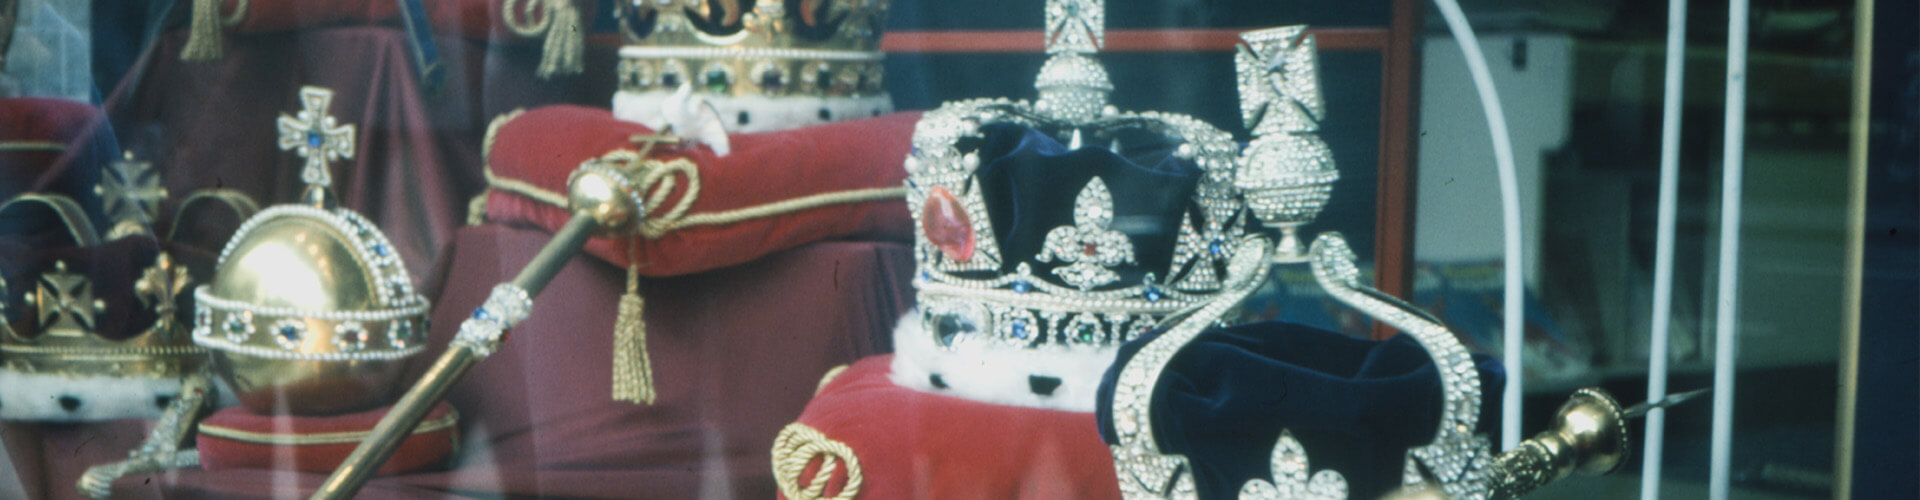 crown jewels